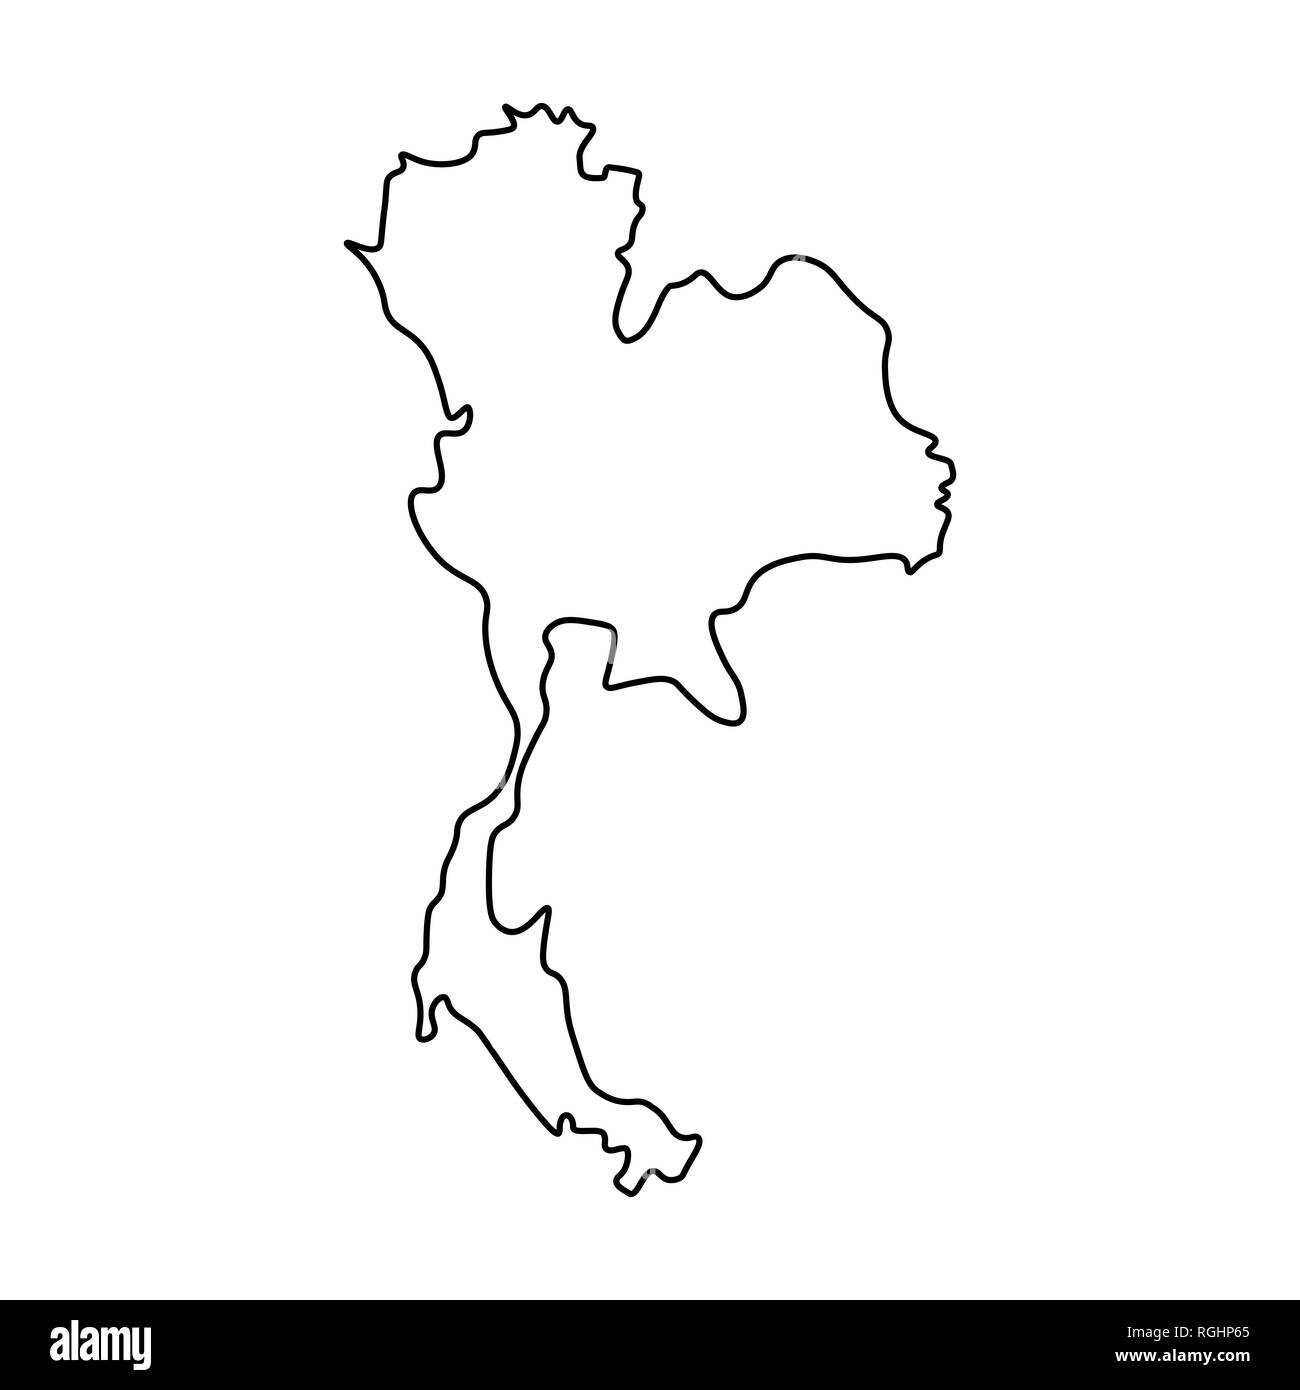 Mapa tailandia imãgen de stock en blanco y negro